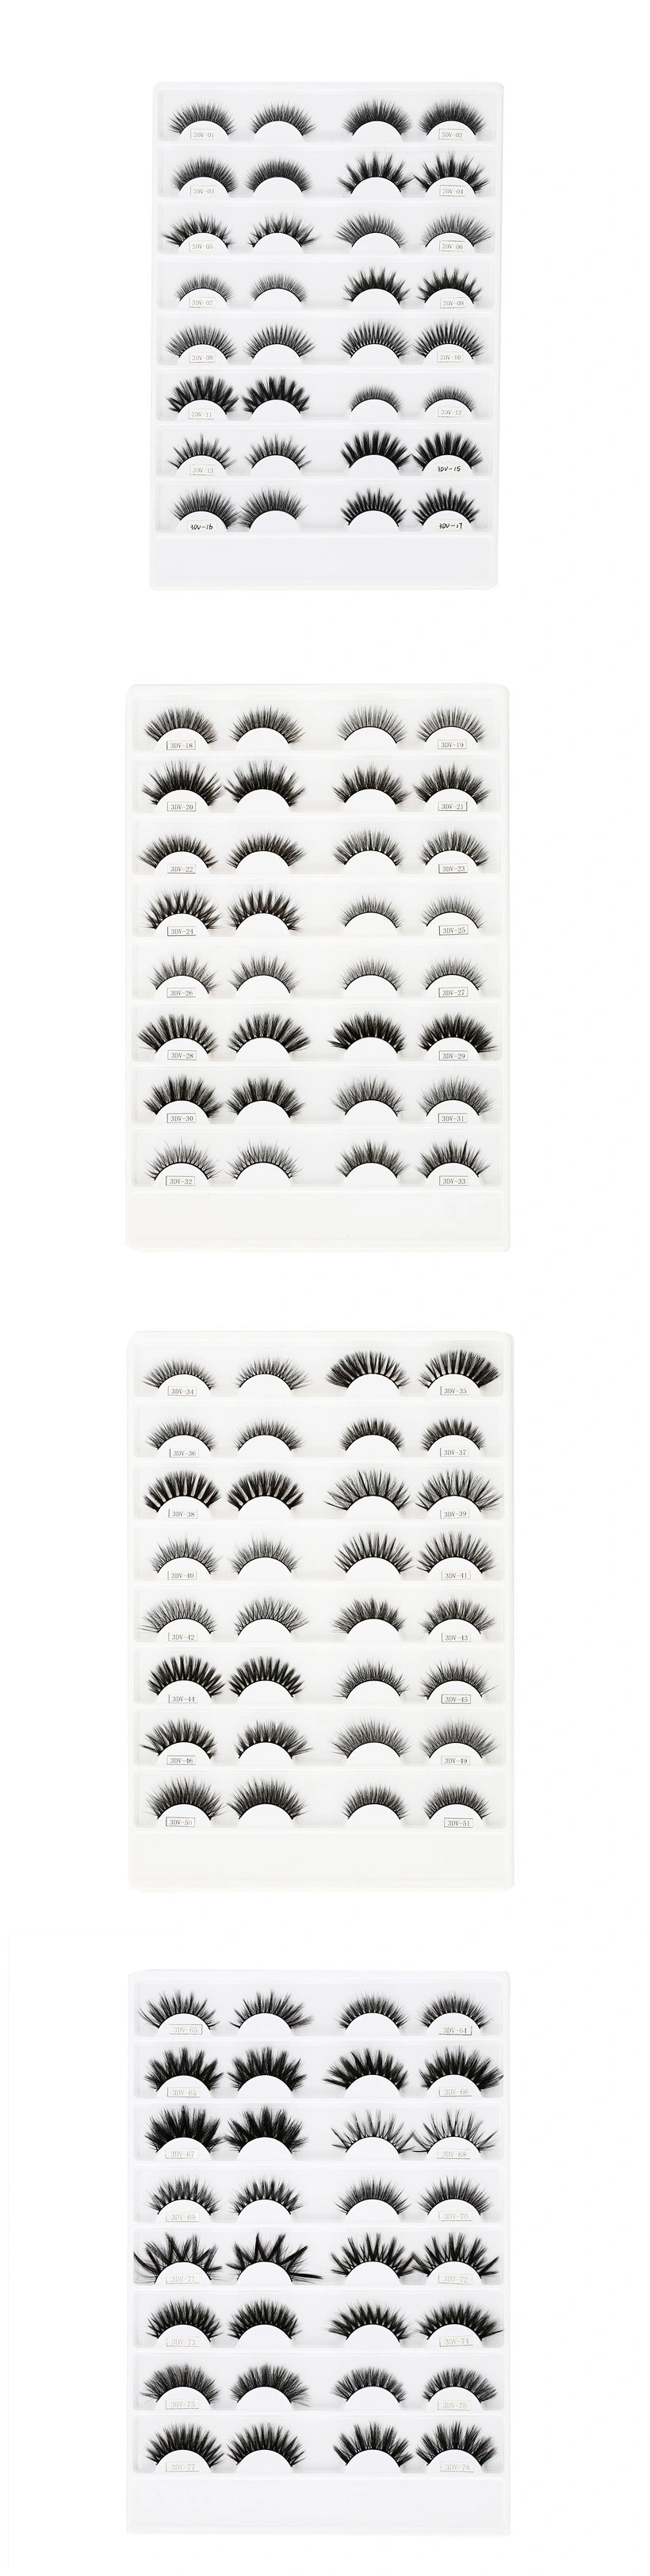 Wholesale False Eyelash Vendor Magnetic Eyeliner Eyelash Silk Eyelash Extension Mink Eyelash Printing with Your Logo